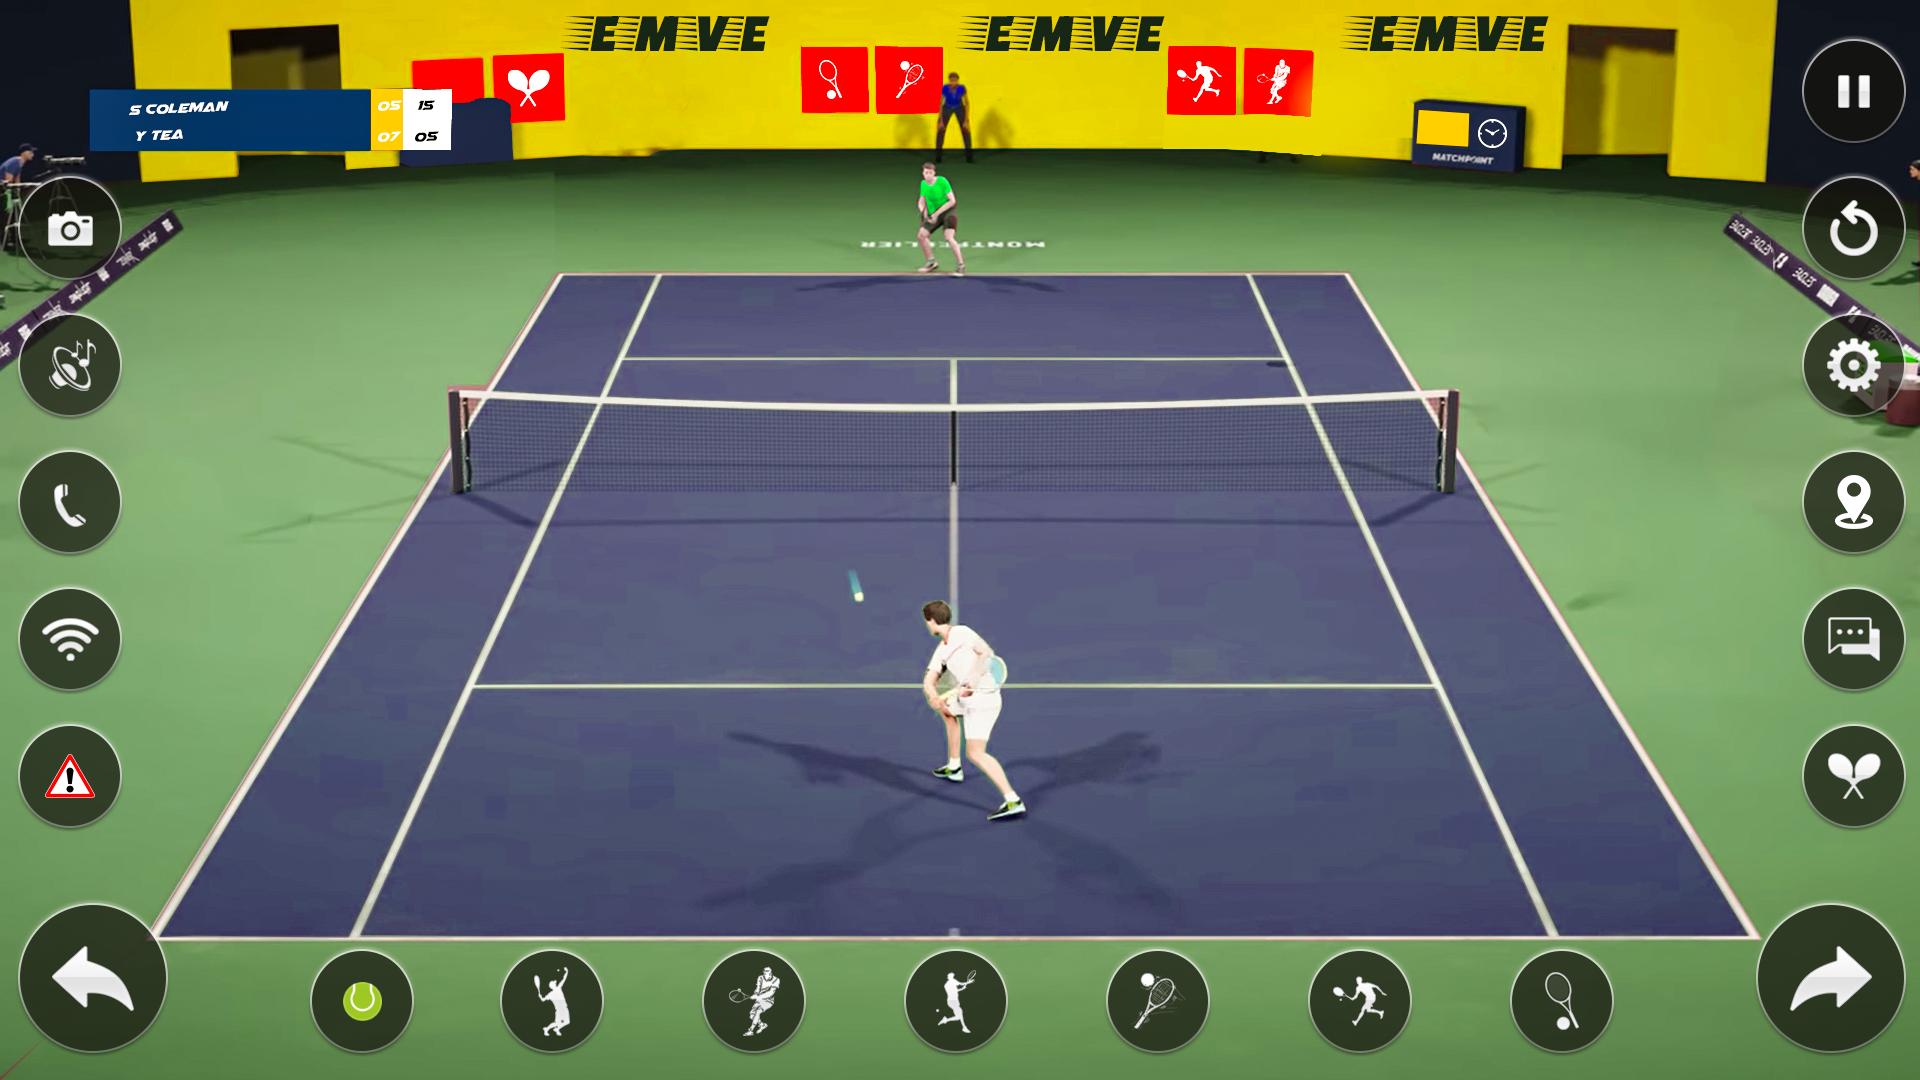 Tennis for two игра. 3d теннис. Хумо Арена теннис. Парная игра в теннис когда противником является стенка.